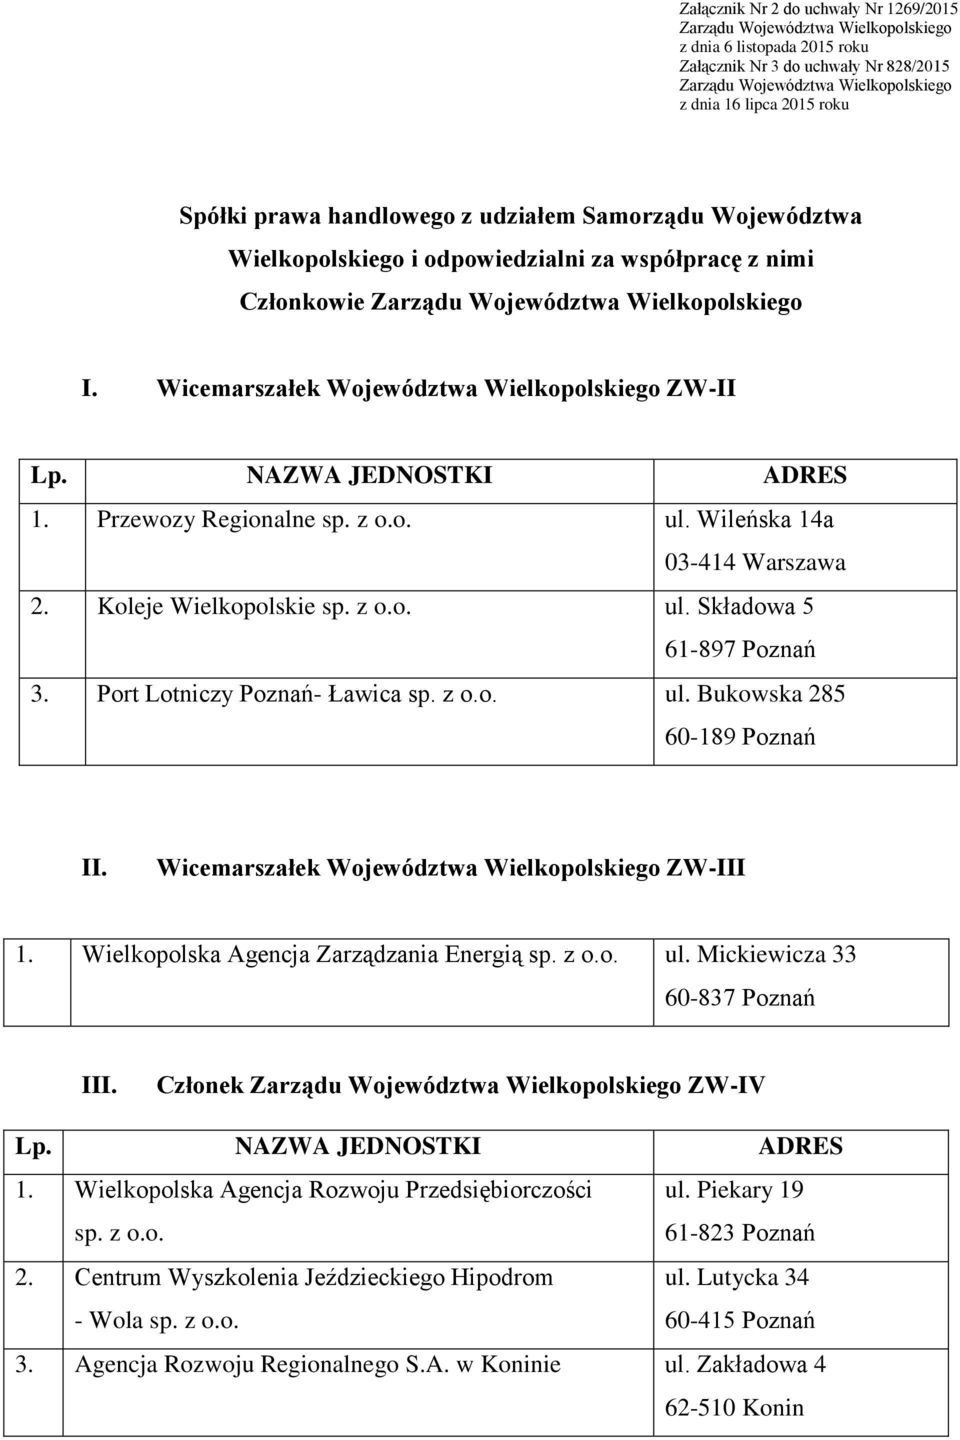 Wicemarszałek Województwa Wielkopolskiego ZW-II 1. Przewozy Regionalne sp. z o.o. ul. Wileńska 14a 03-414 Warszawa 2. Koleje Wielkopolskie sp. z o.o. ul. Składowa 5 61-897 Poznań 3.